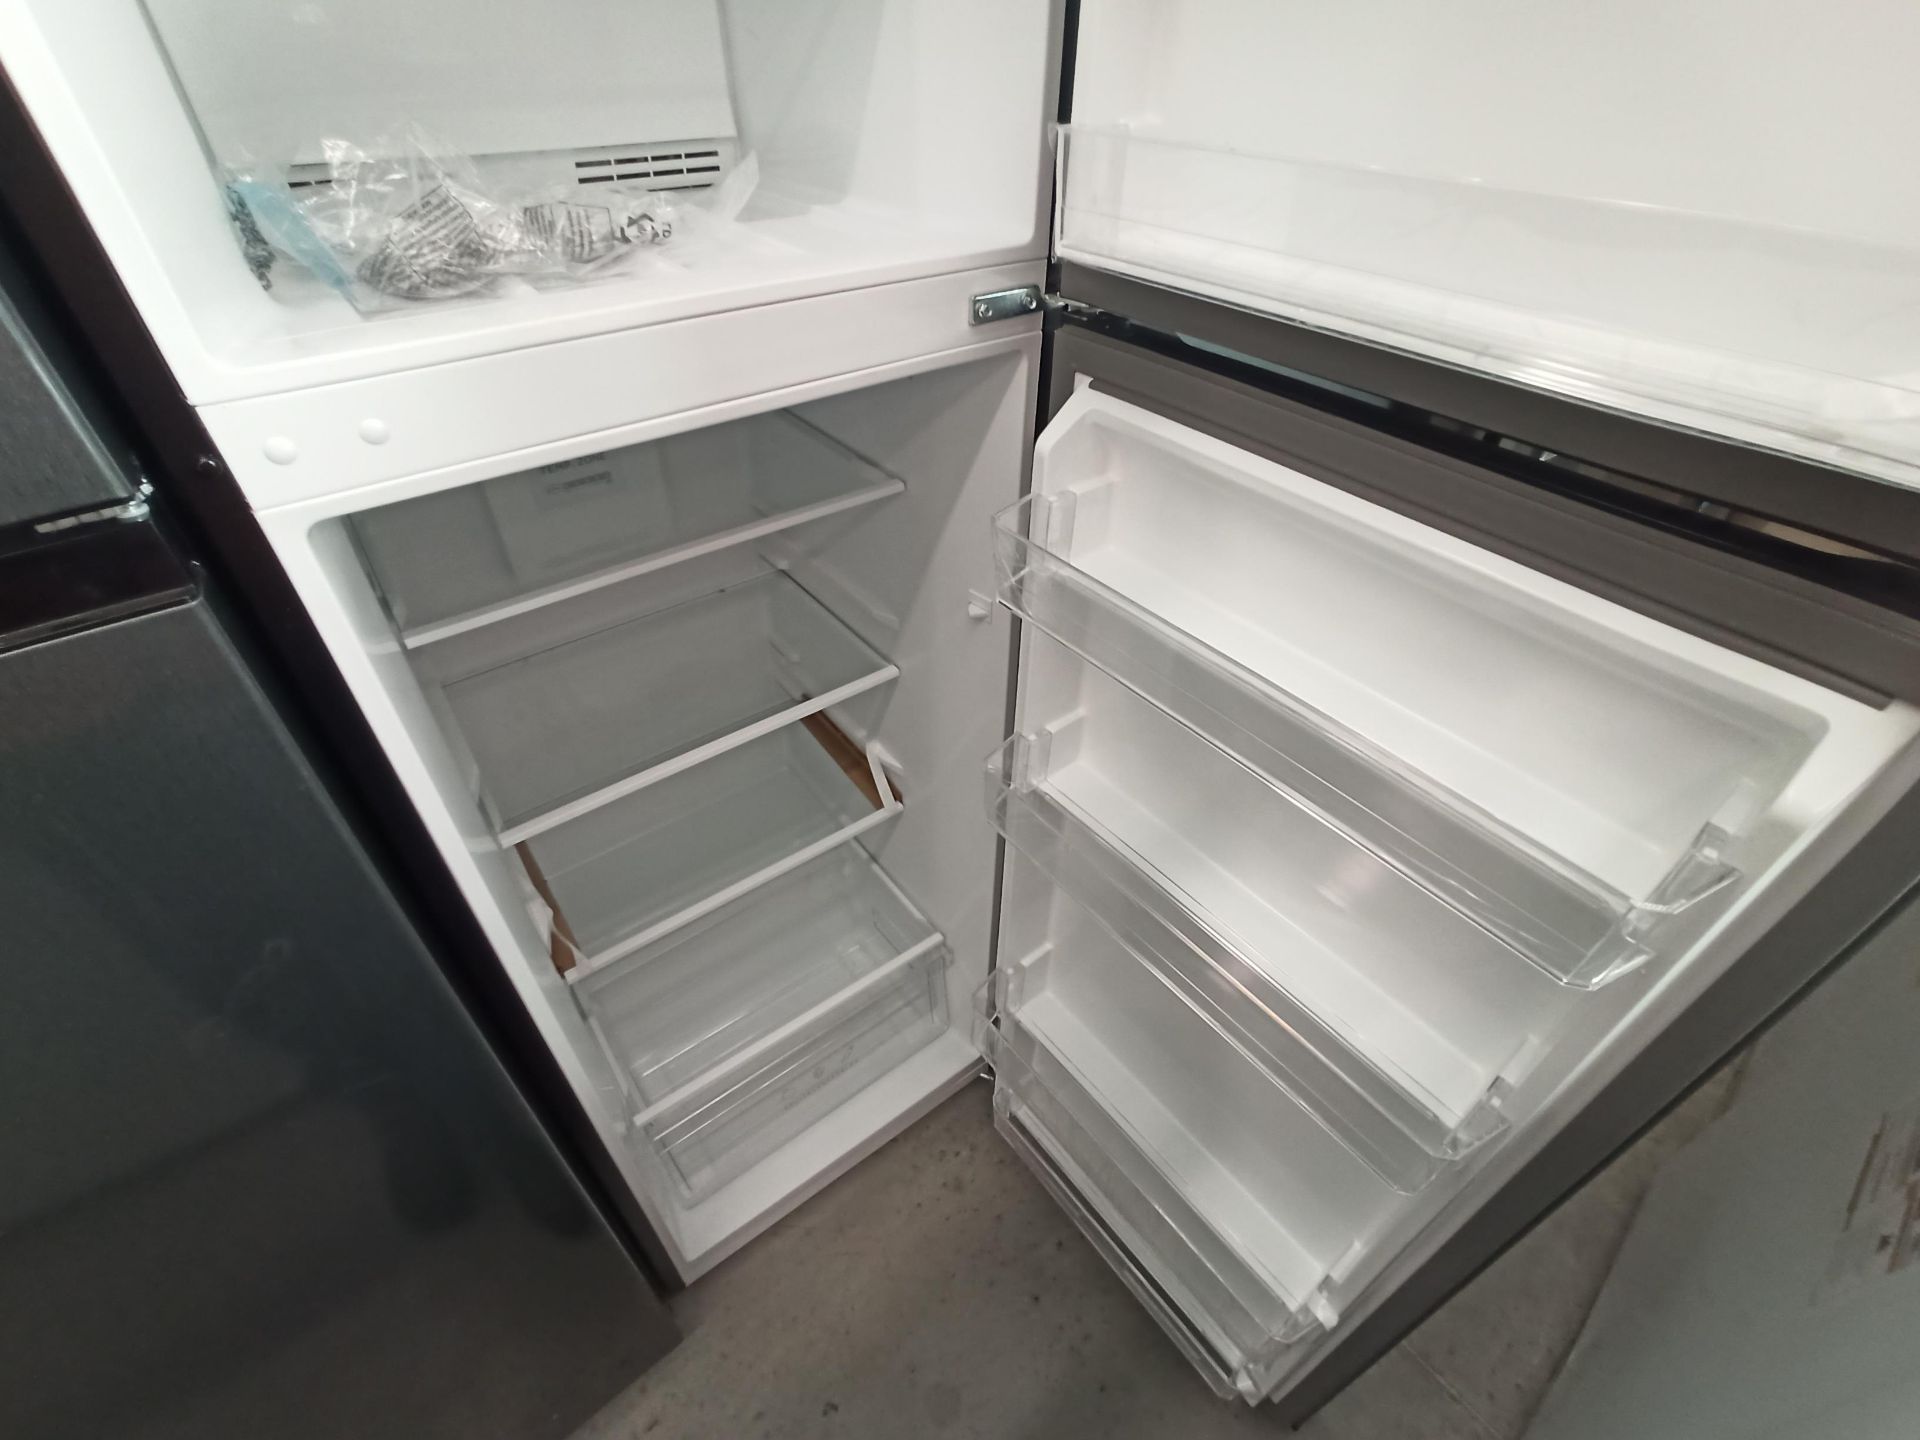 Lote de 2 refrigeradores contiene: 1 Refrigerador Marca ATVIO, Modelo AT-94PMS, Serie N/D, Color GR - Image 8 of 18